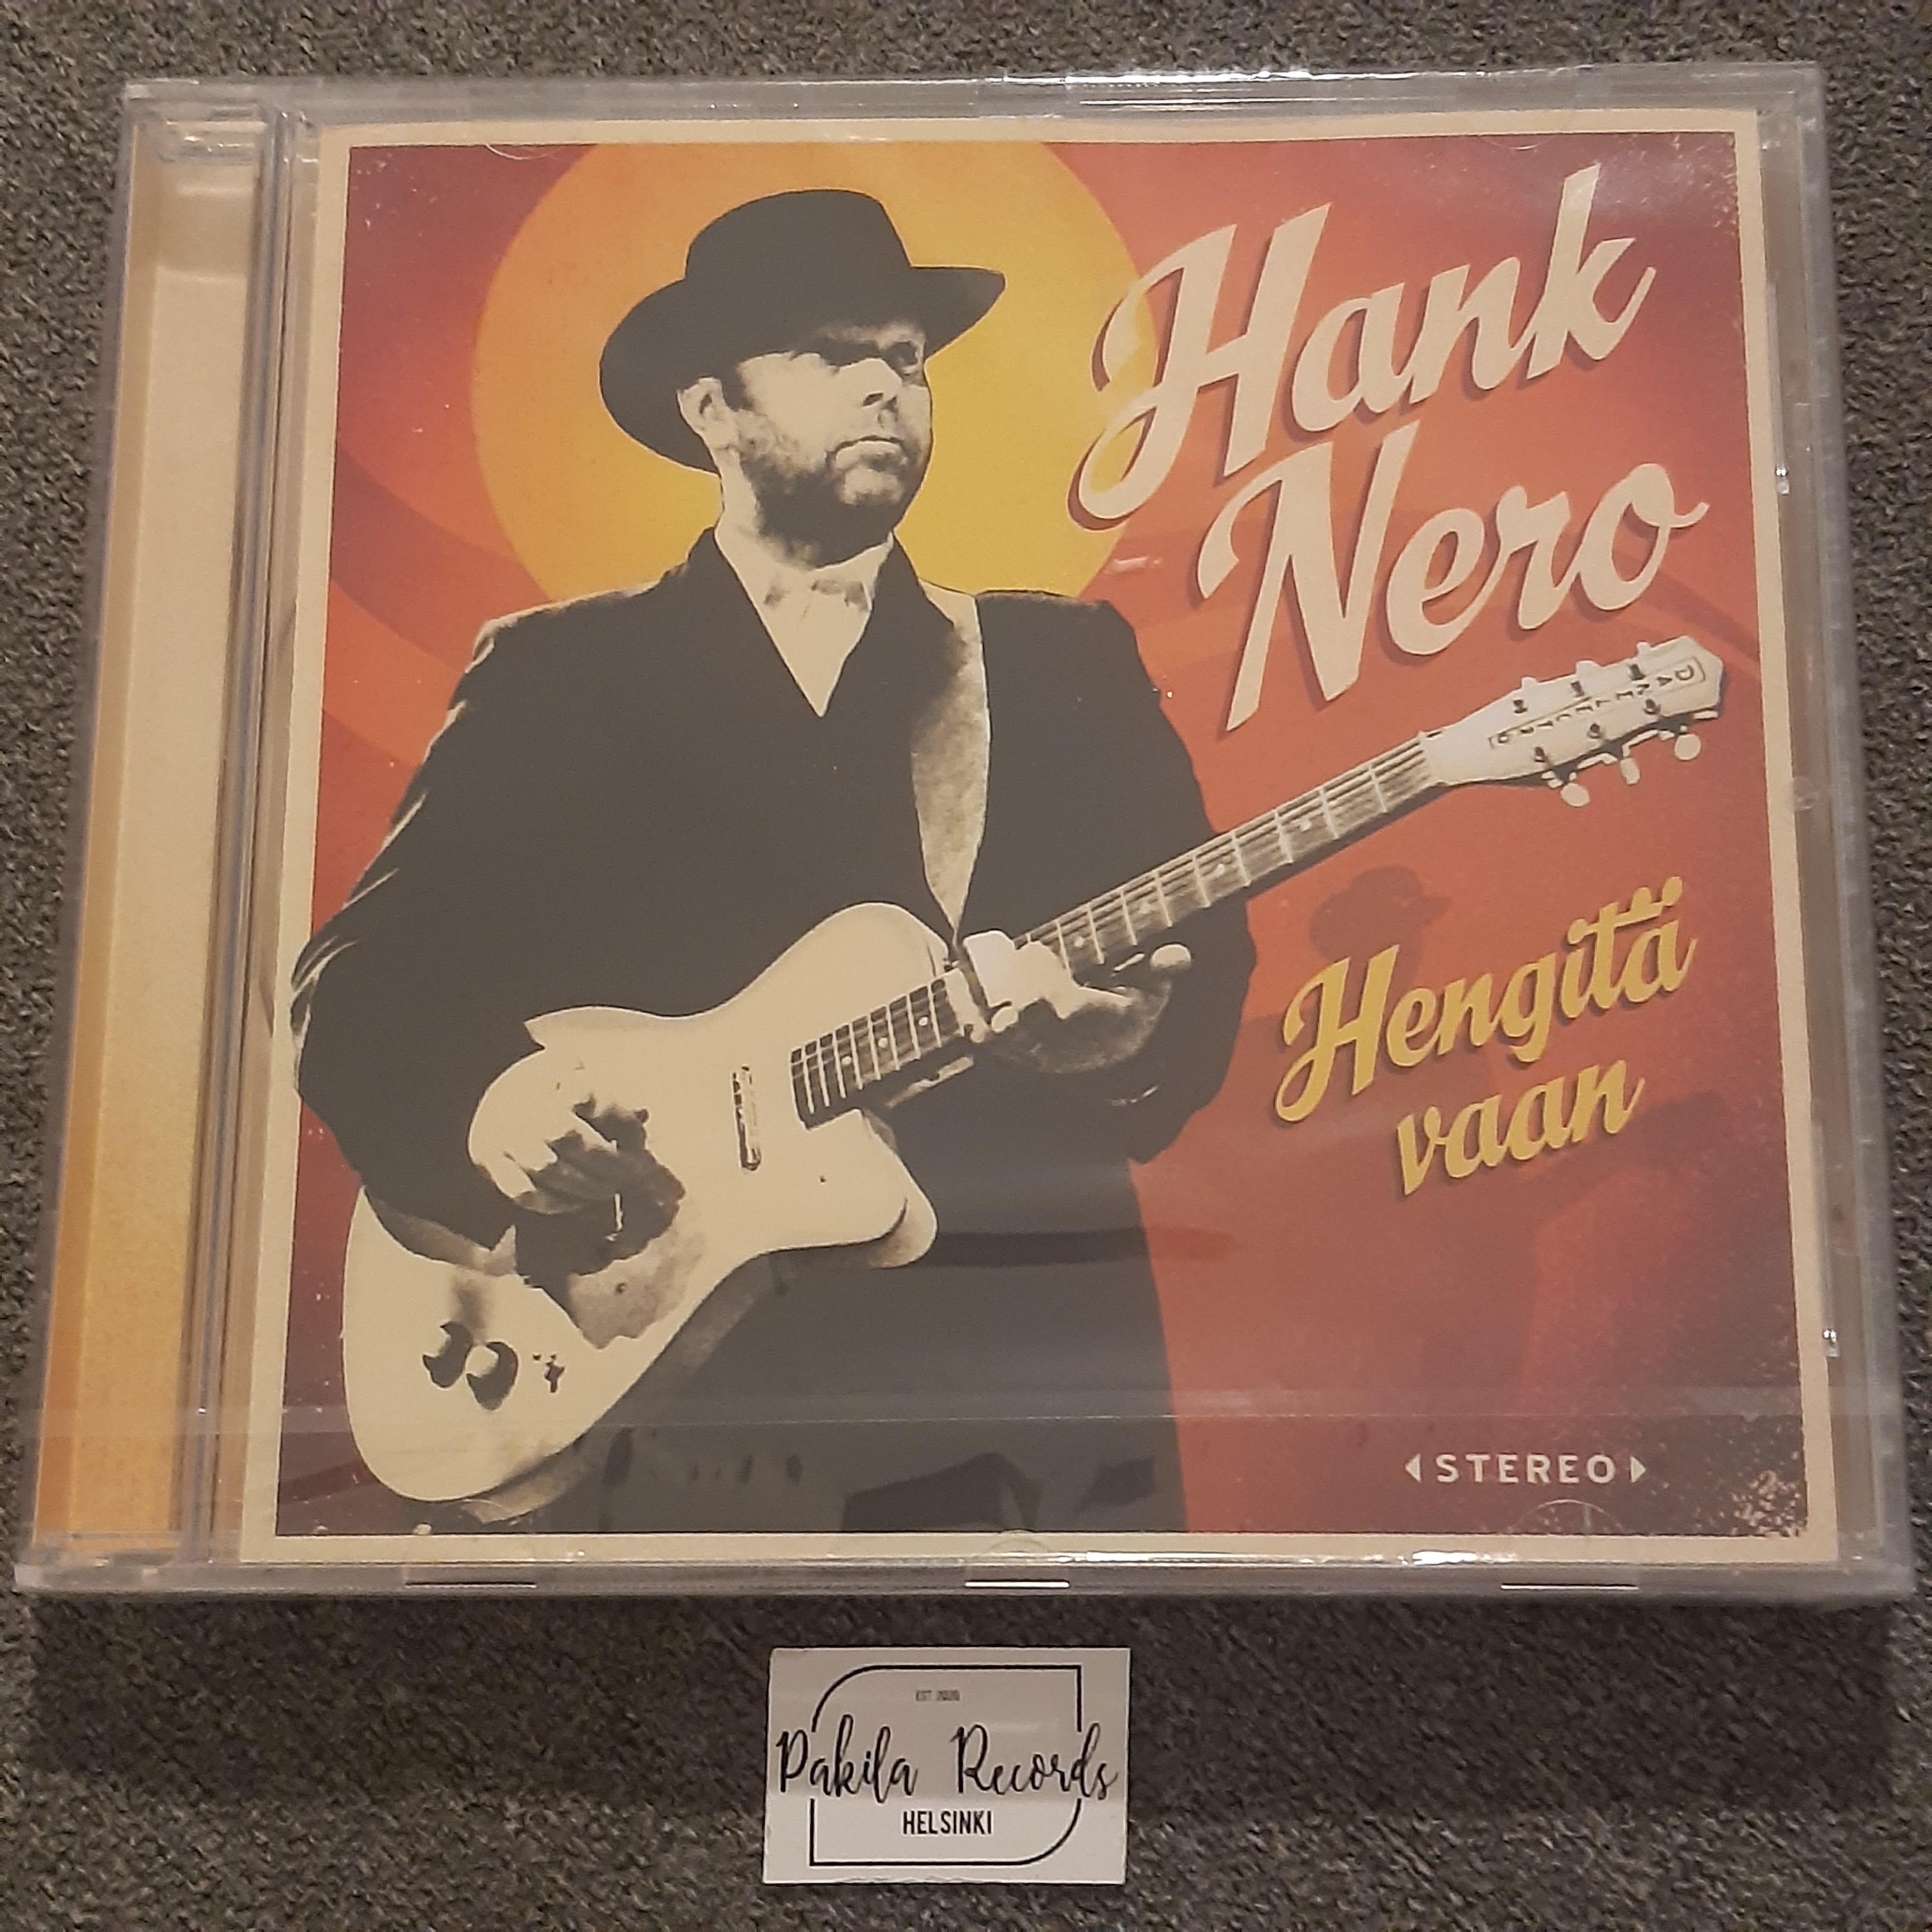 Hank Nero - Hengitä vaan - CD (käytetty)